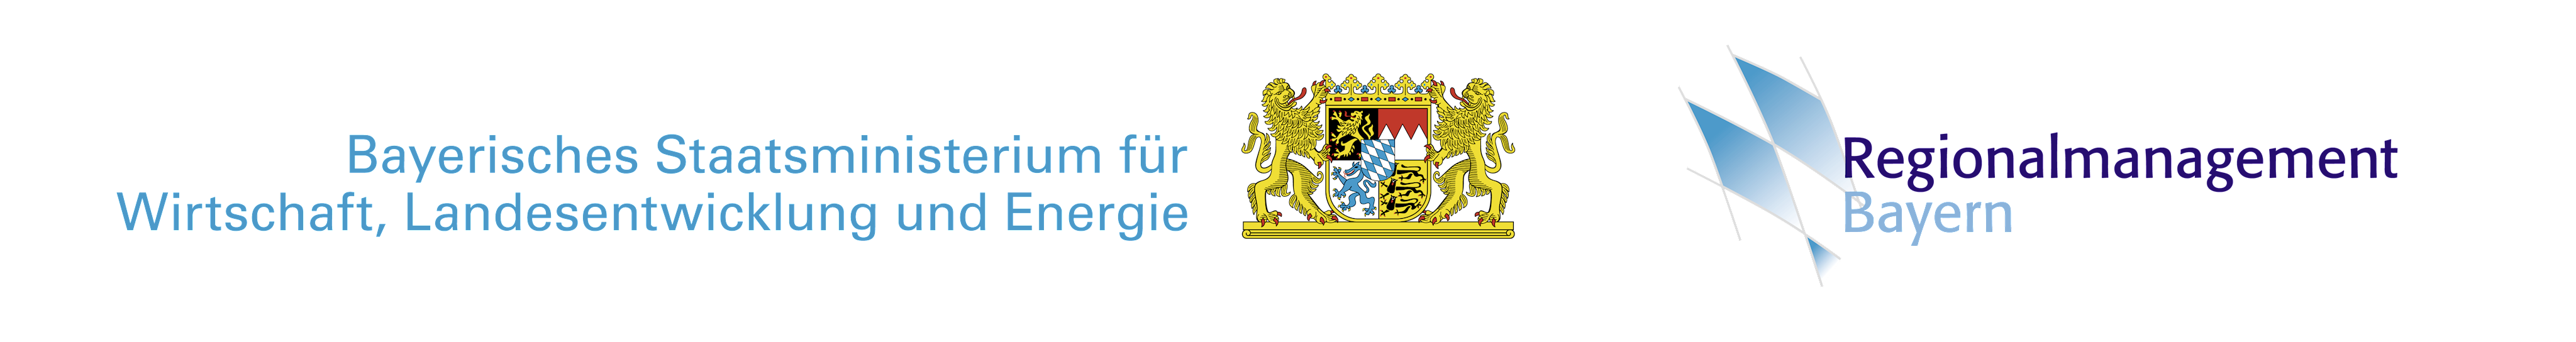 Logos Regionalmanagement und Bayerisches Wirtschaftsministerium